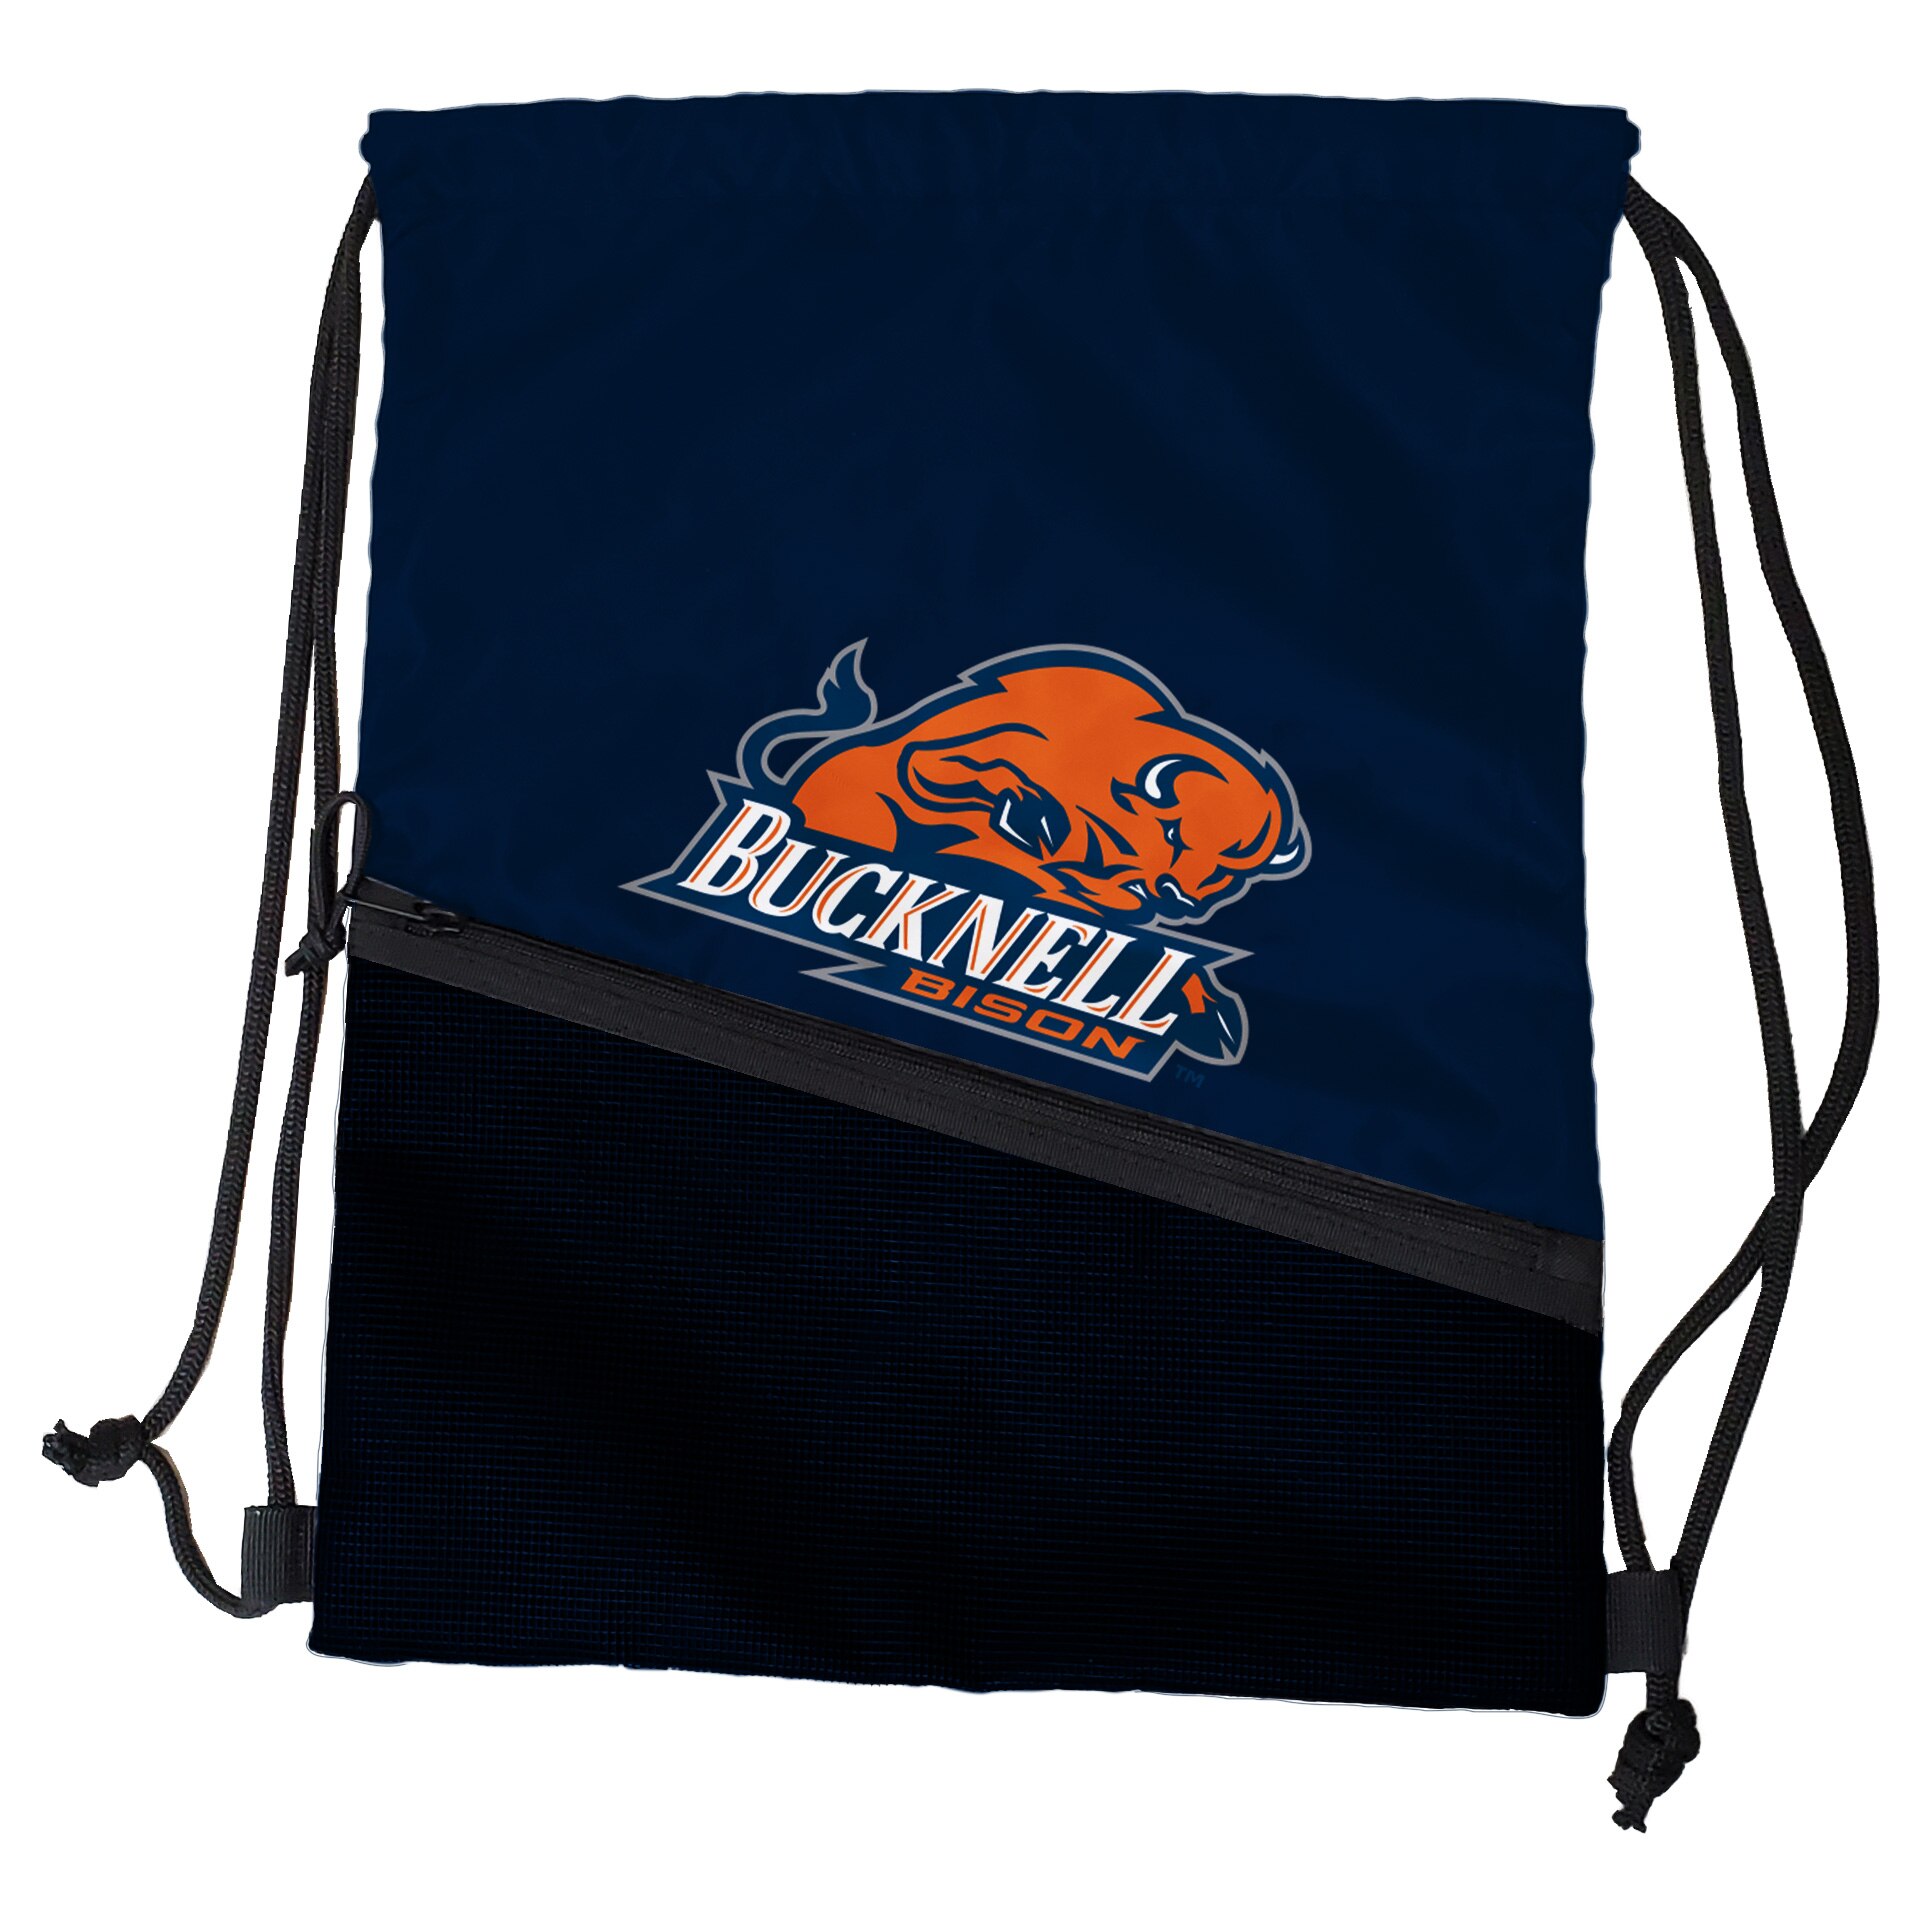 Bucknell University Bison 871 Tilt Backsack Backpacks and Bags